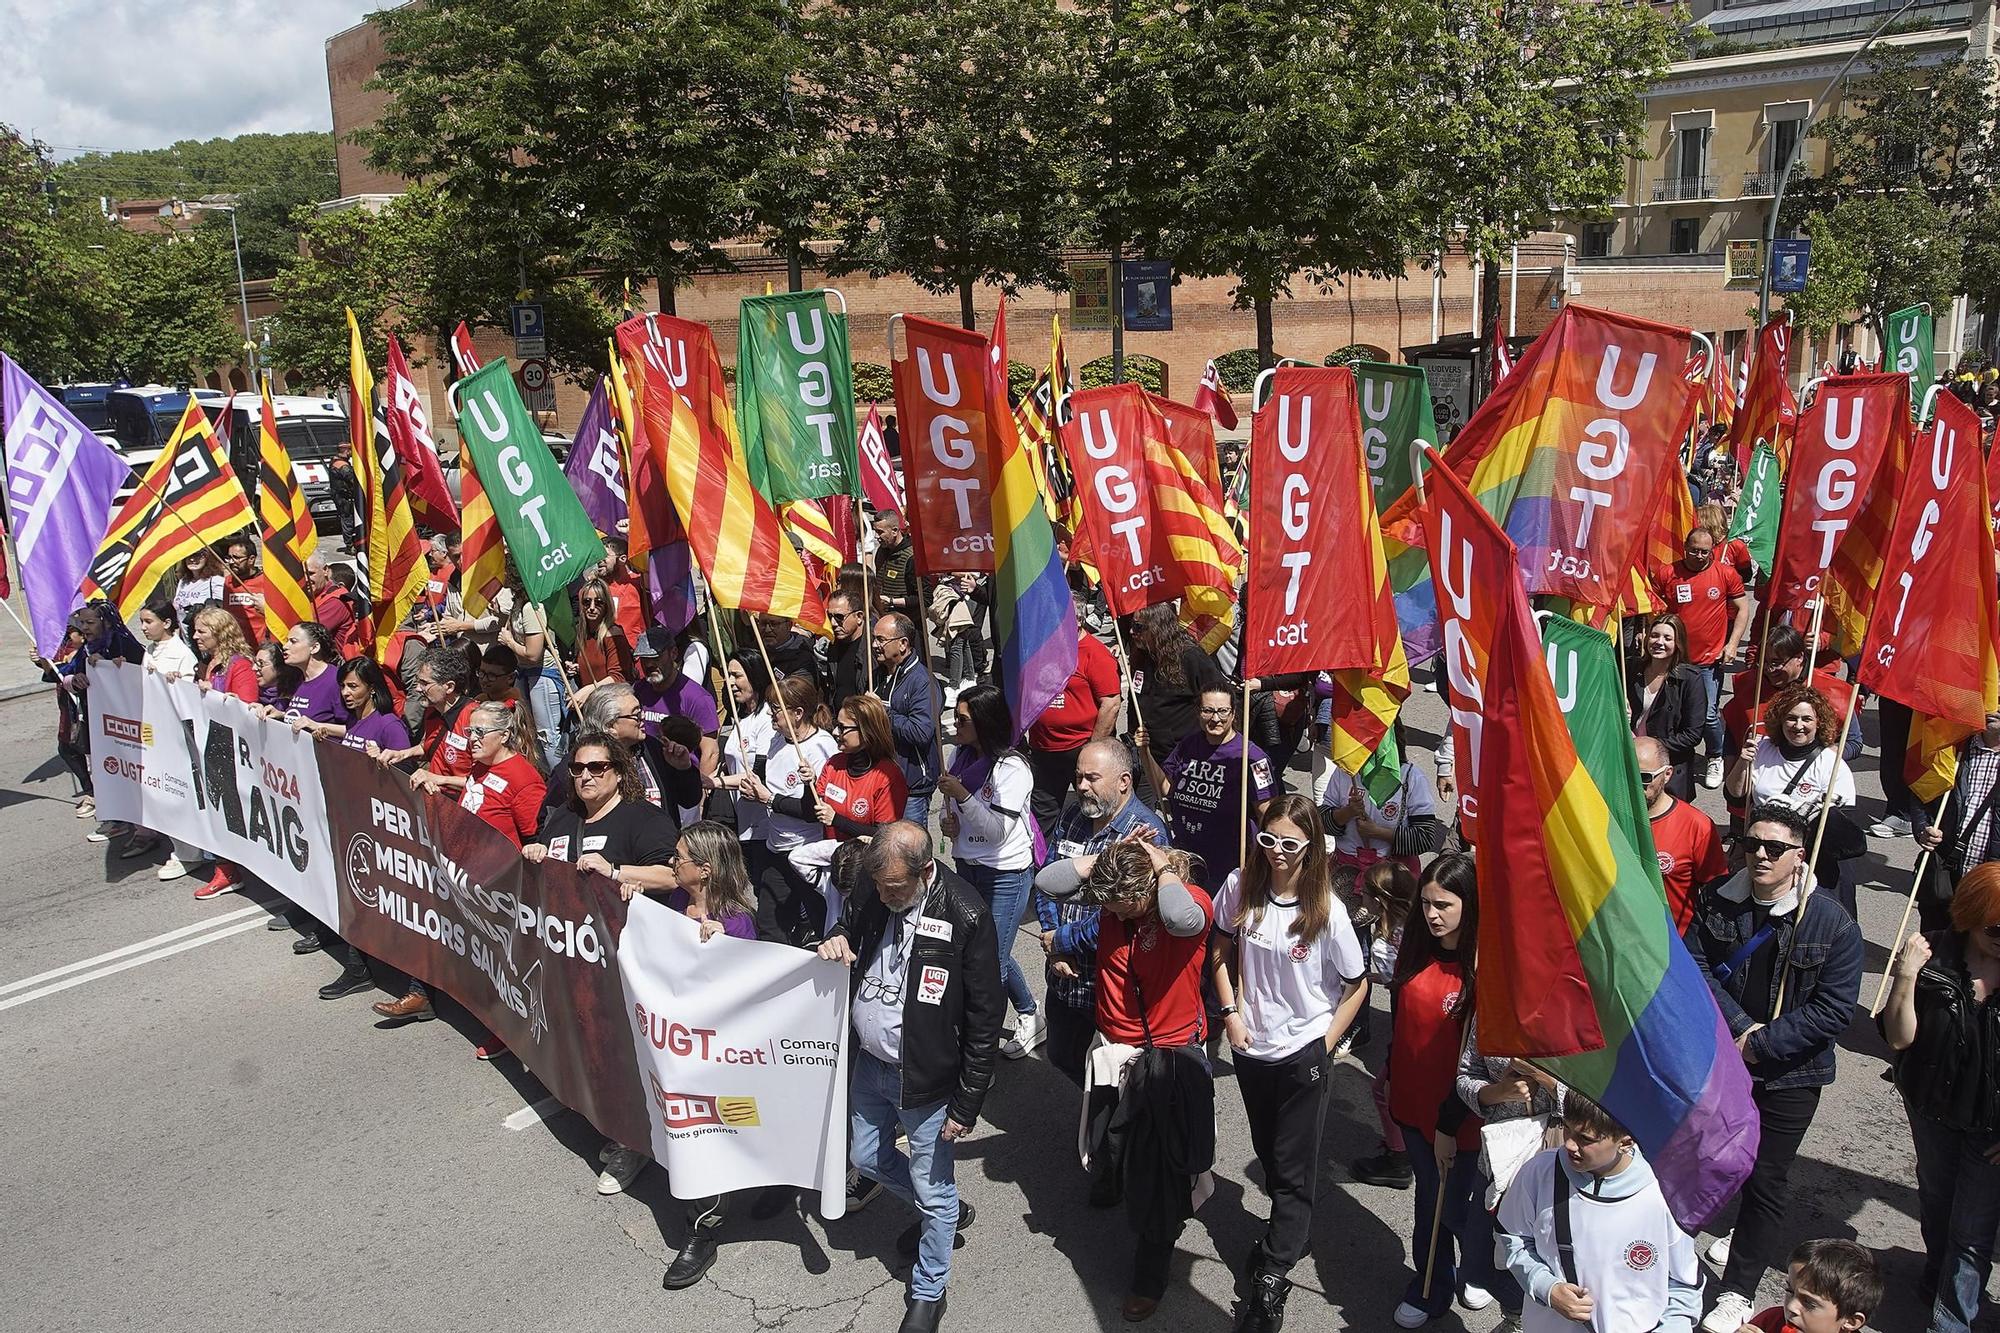 Les imatges de la manifestació de l'1 de maig a la ciutat de Girona